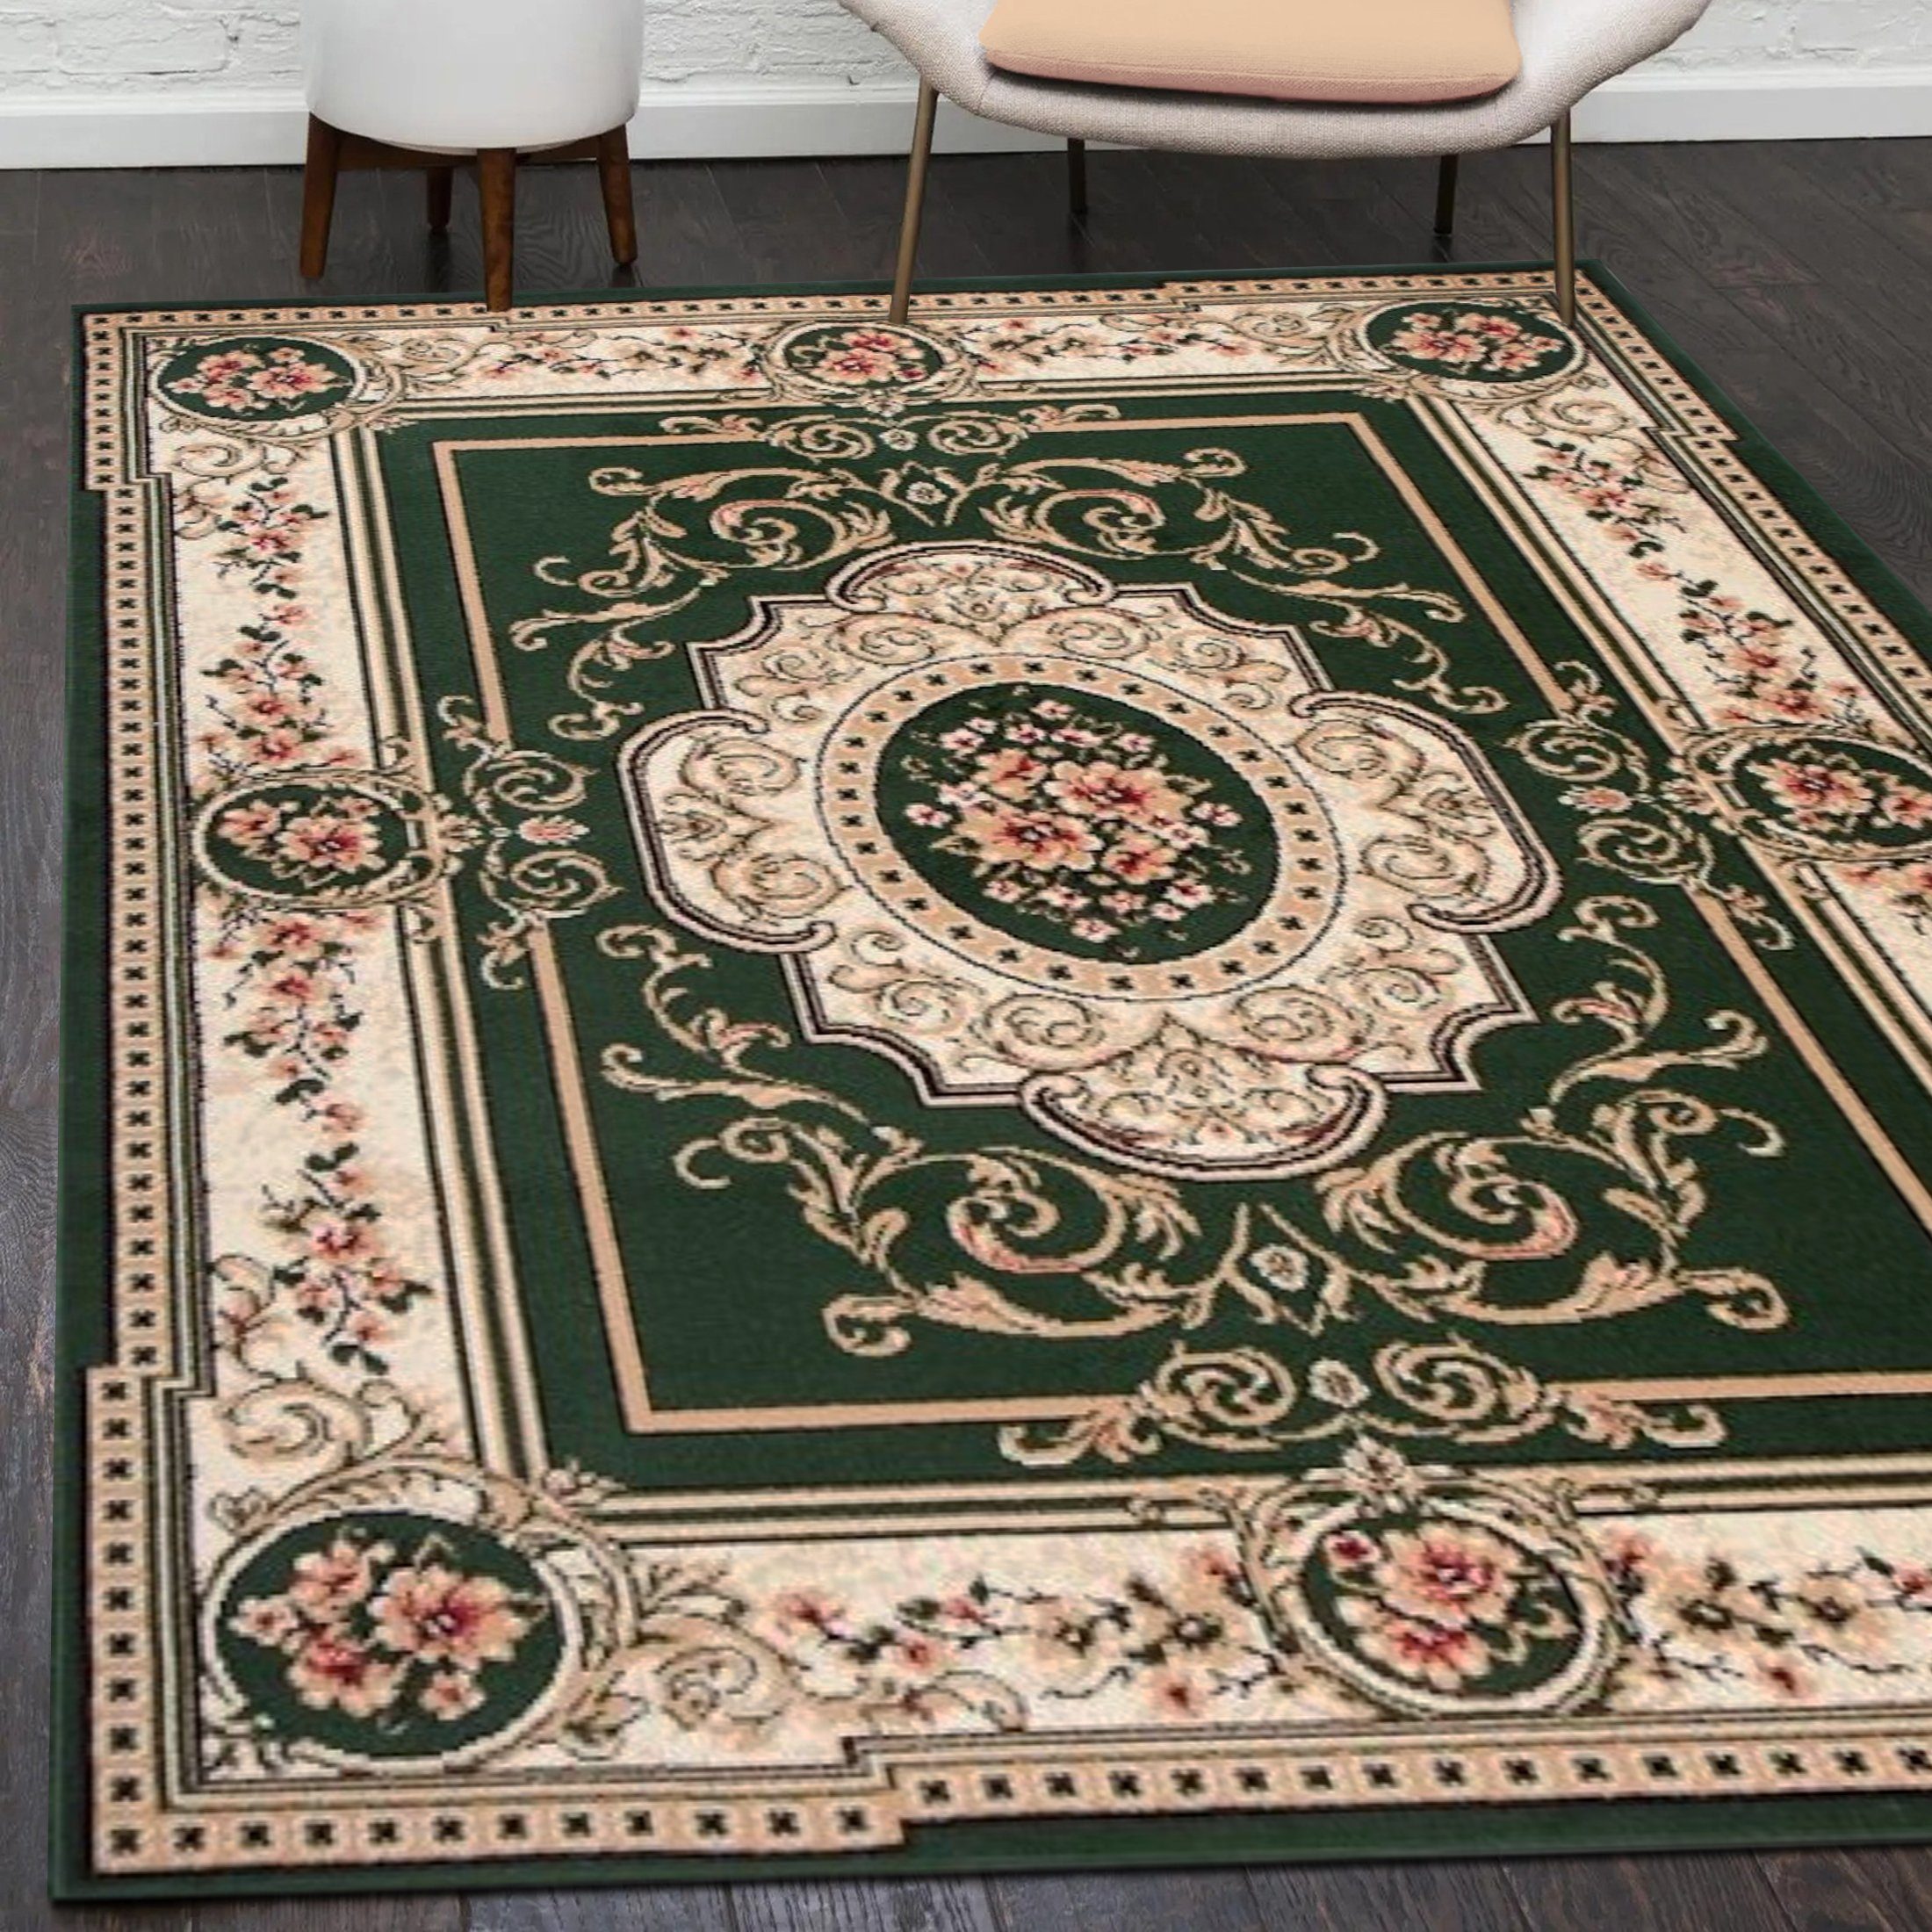 Orientteppich Orientalisch Vintage Teppich Kurzflor Wohnzimmerteppich Grün, Mazovia, 80 x 150 cm, Fußbodenheizung, Allergiker geeignet, Farbecht, Pflegeleicht Grün / F744A-GREEN